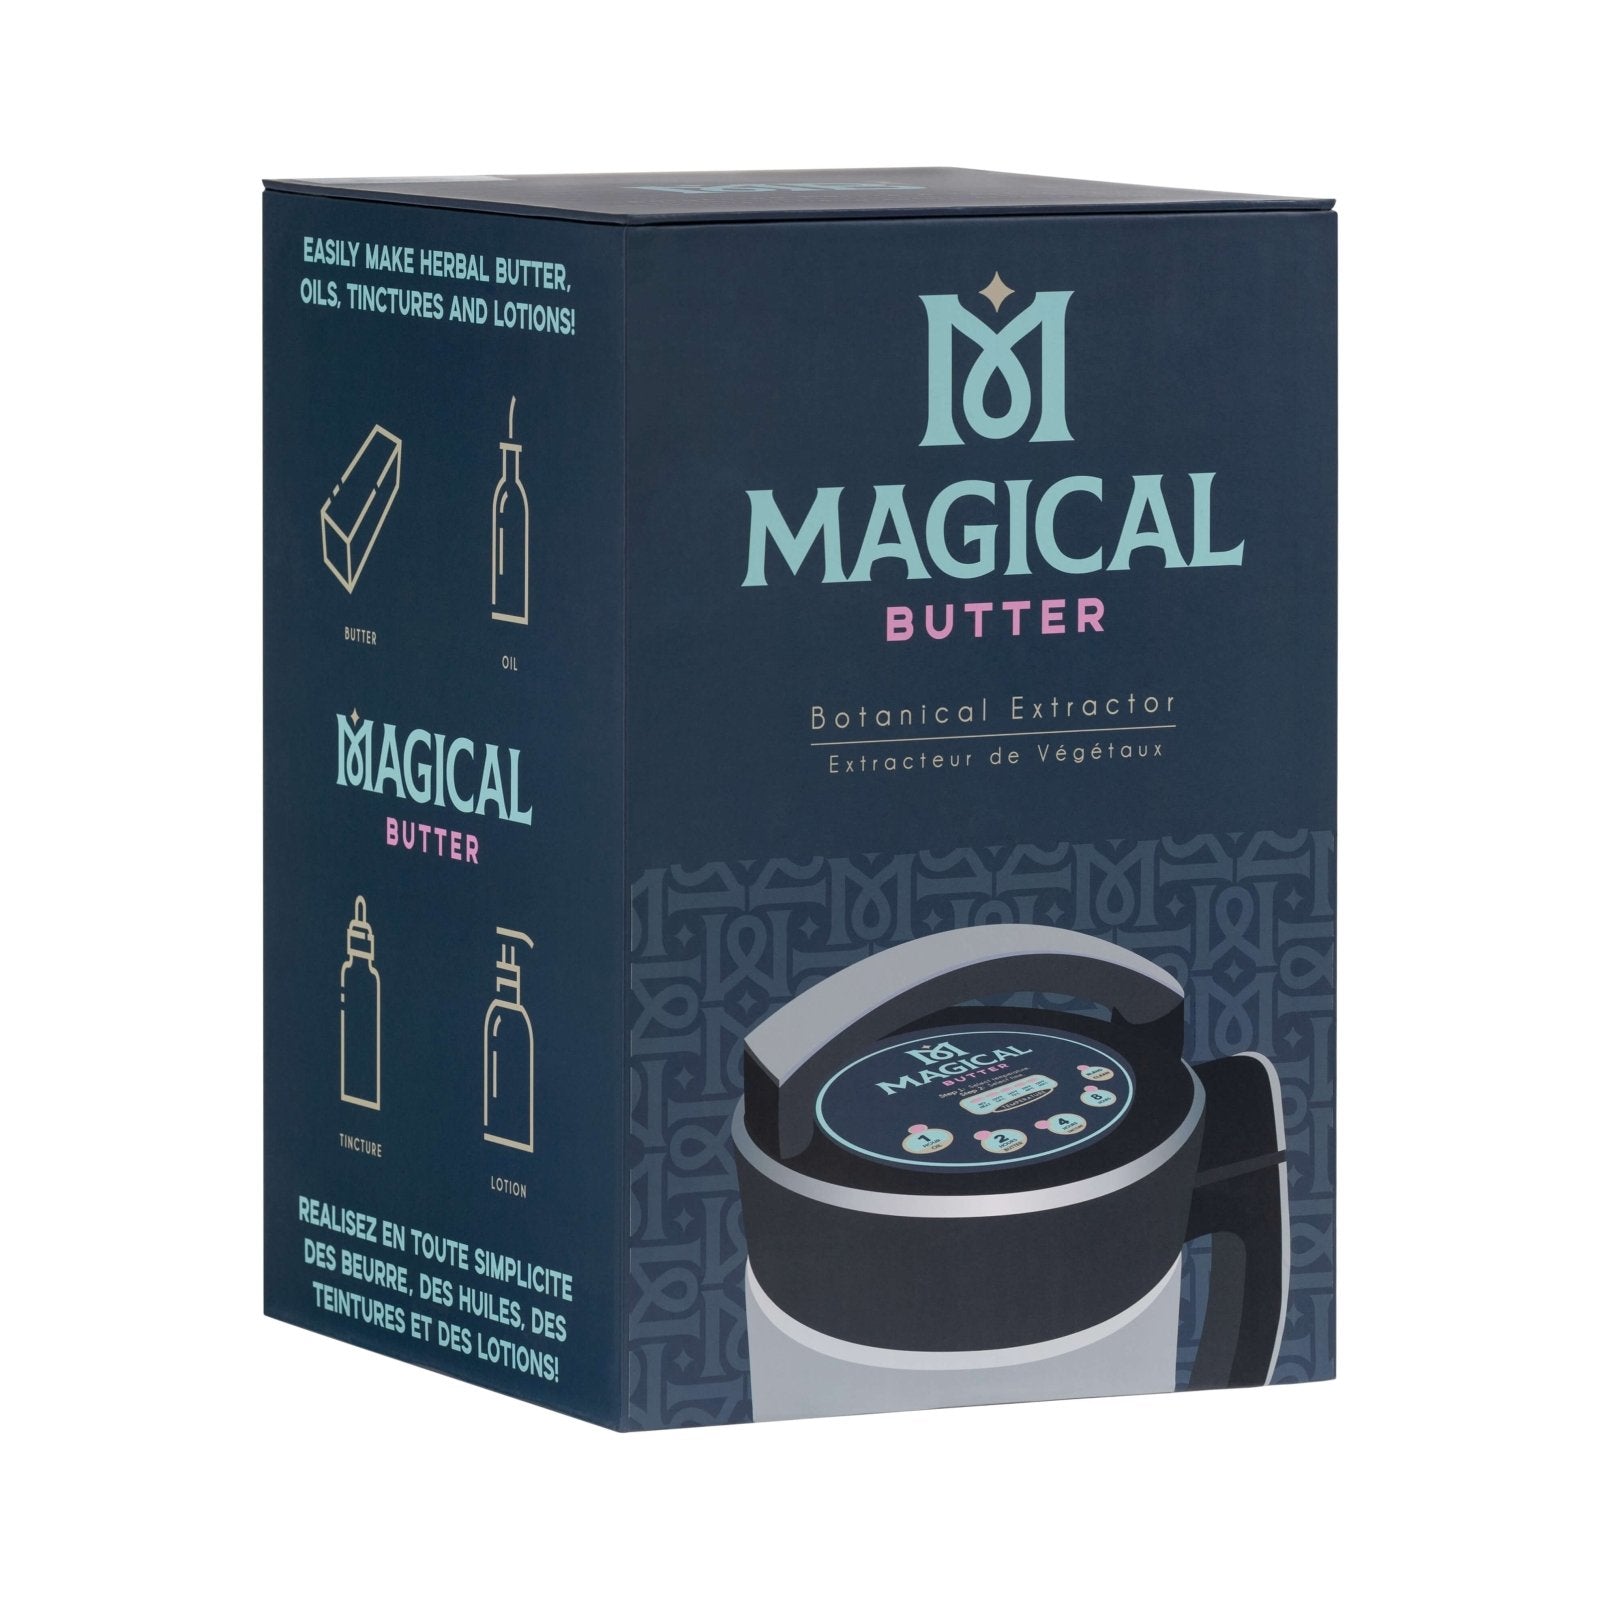 Magicalbutter 2 - Magical Herbal Butter Infuser - MB2E